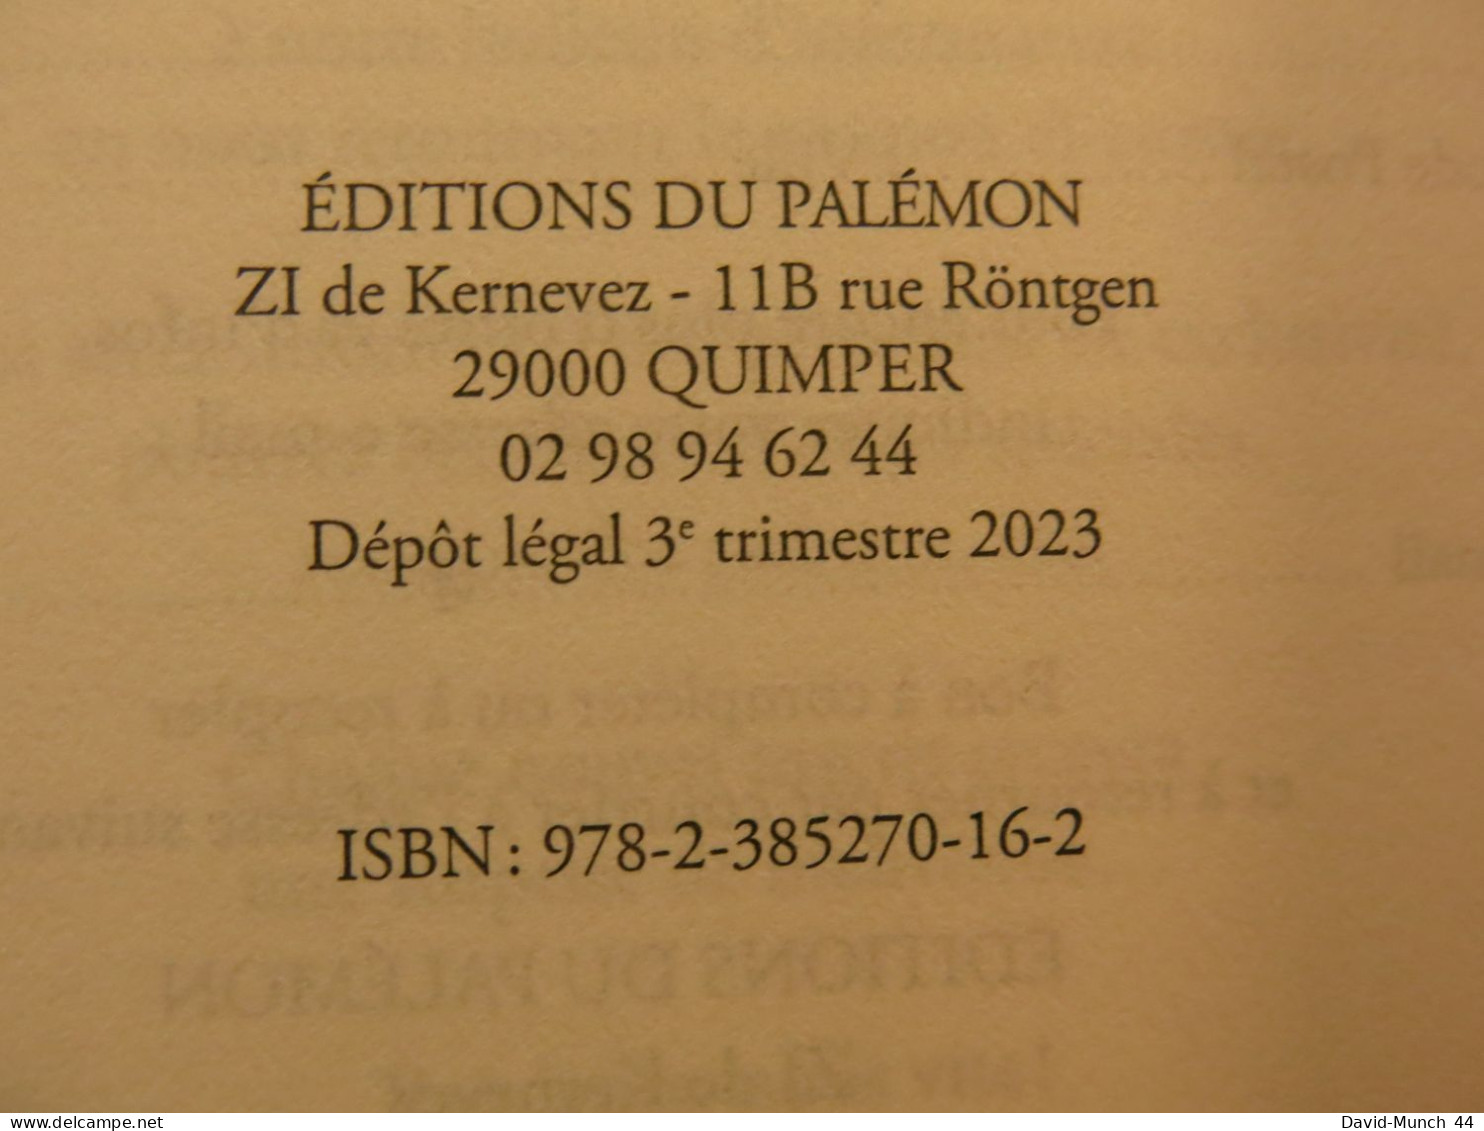 Le petit Quimpérois s’en va en guerre, Années 60-62, Algérie de Jean Failler. Palémon éditions. 2023